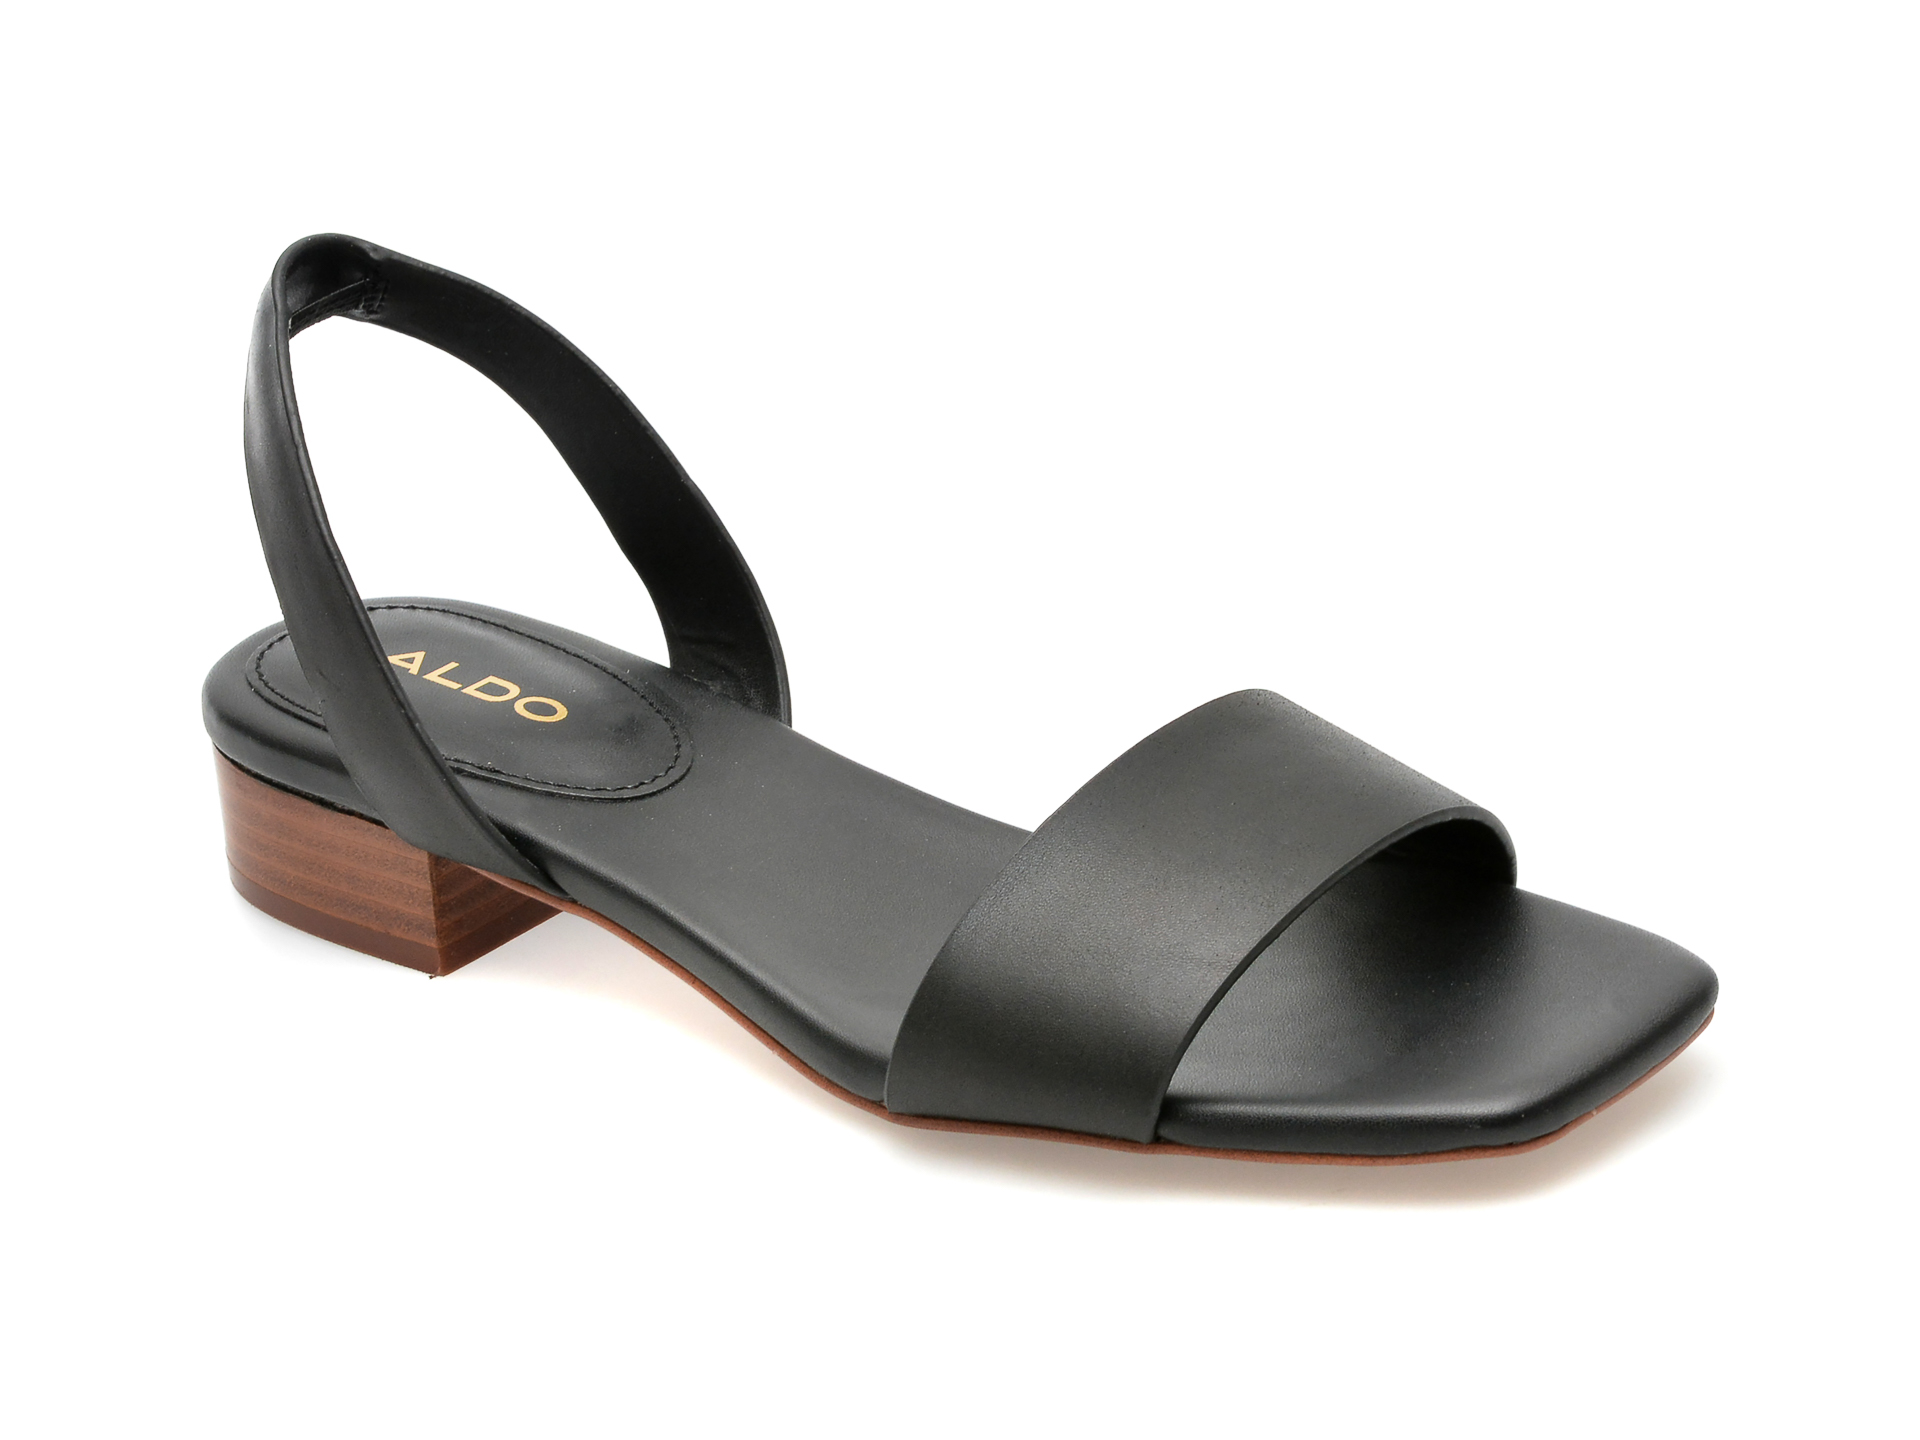 Sandale ALDO negre, DORENNA001, din piele naturala femei 2023-09-23